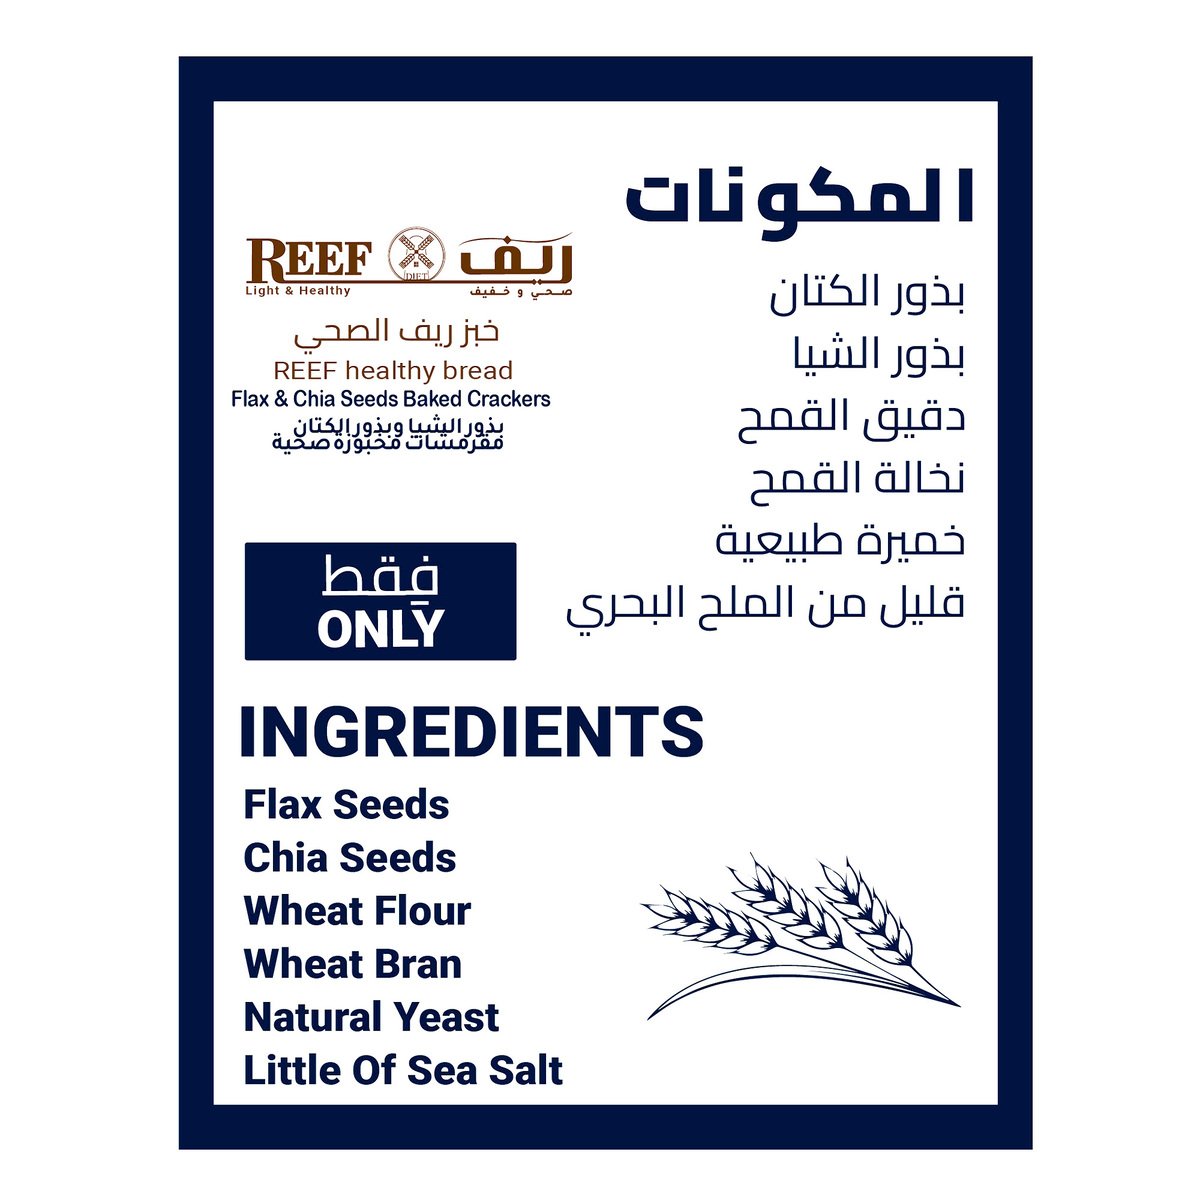 Reef Diet Flax Seeds Bread No Added Sugar 270 g